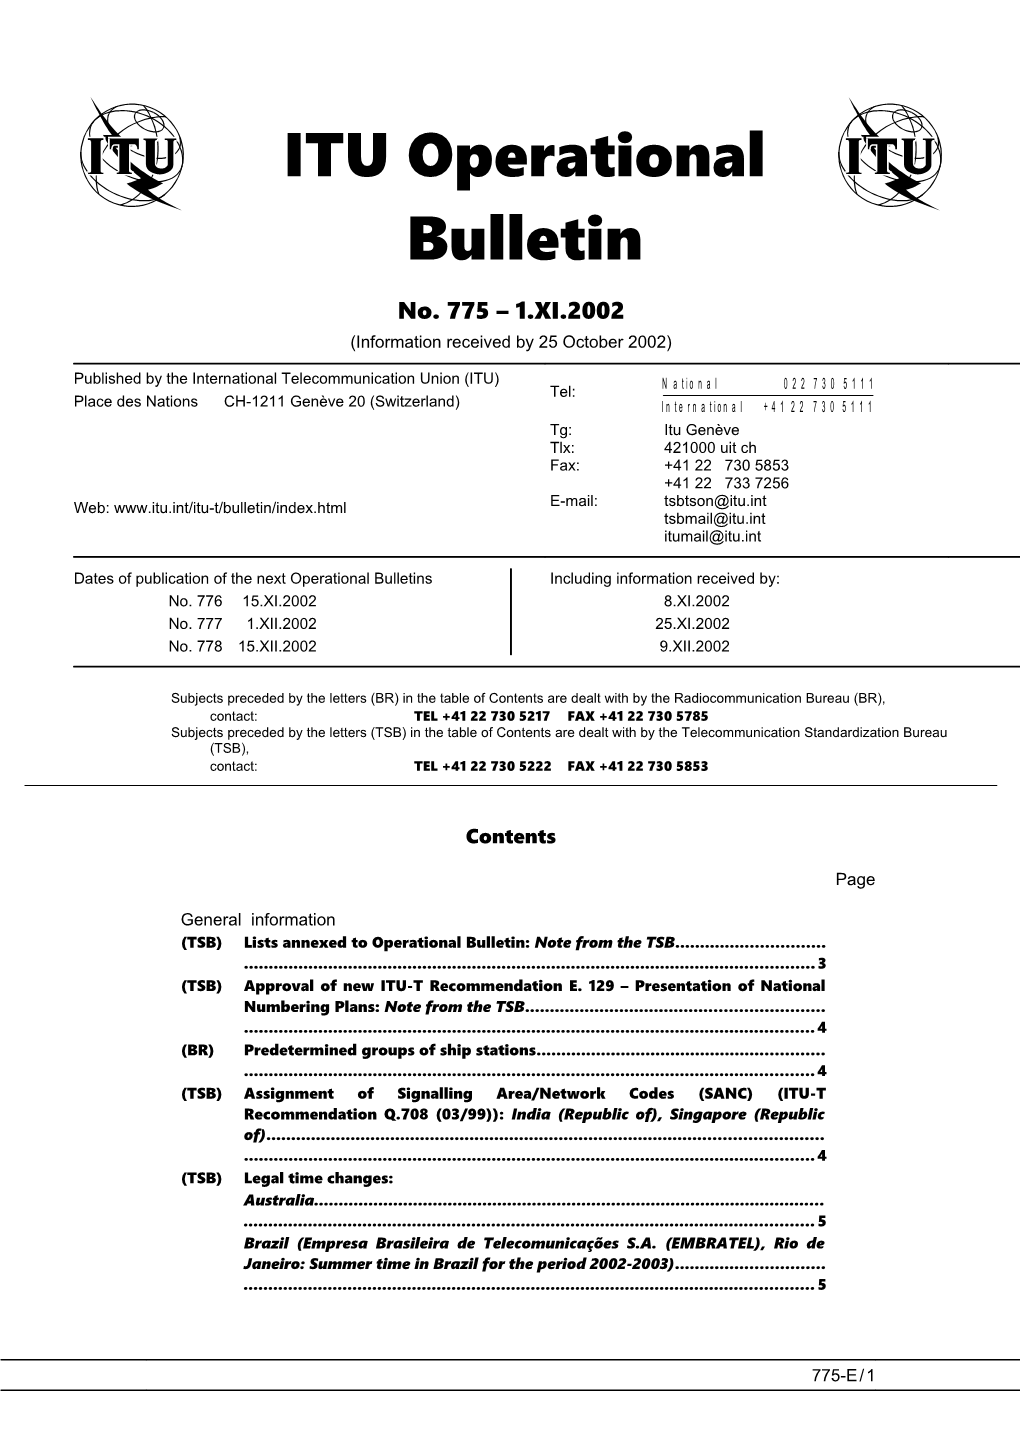 ITU Operational Bulletin 775 - 1.XI.2002